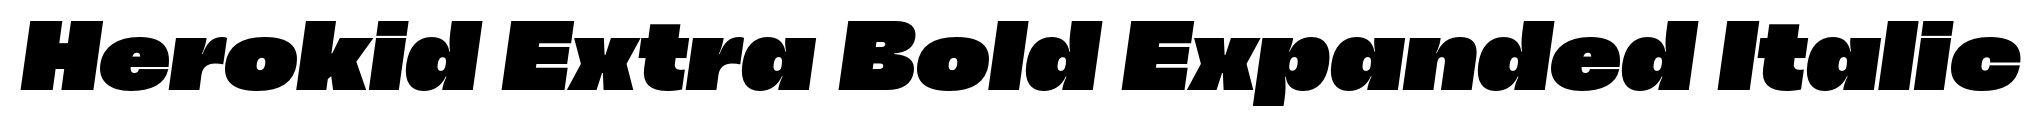 Herokid Extra Bold Expanded Italic image